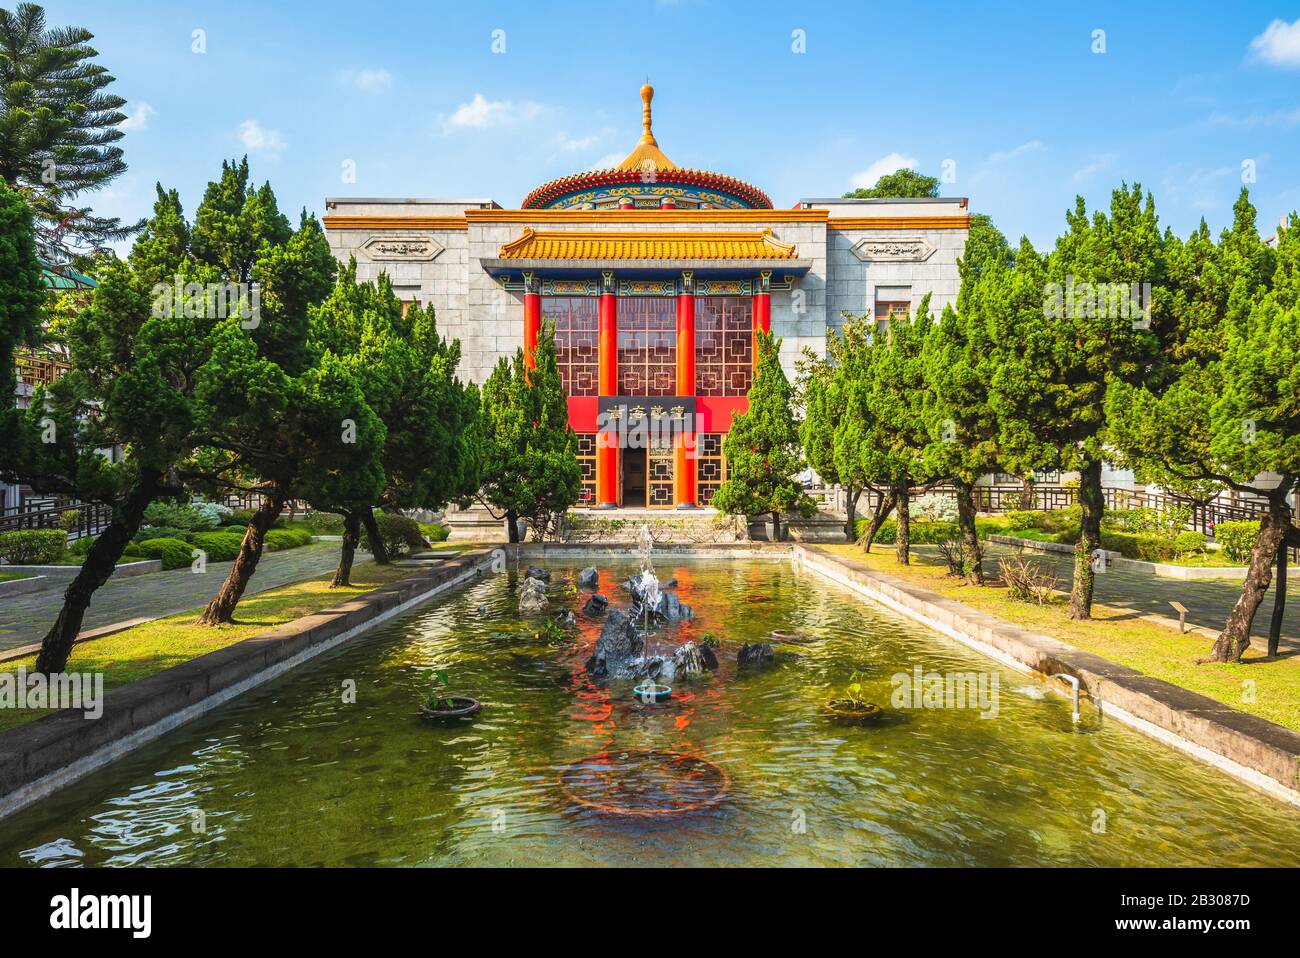 Kulturerbe in der Nanhai Academy, taipeh, taiwan. Die Übersetzung des chinesischen Textes lautet "Nanhai Art Forum". Stockfoto